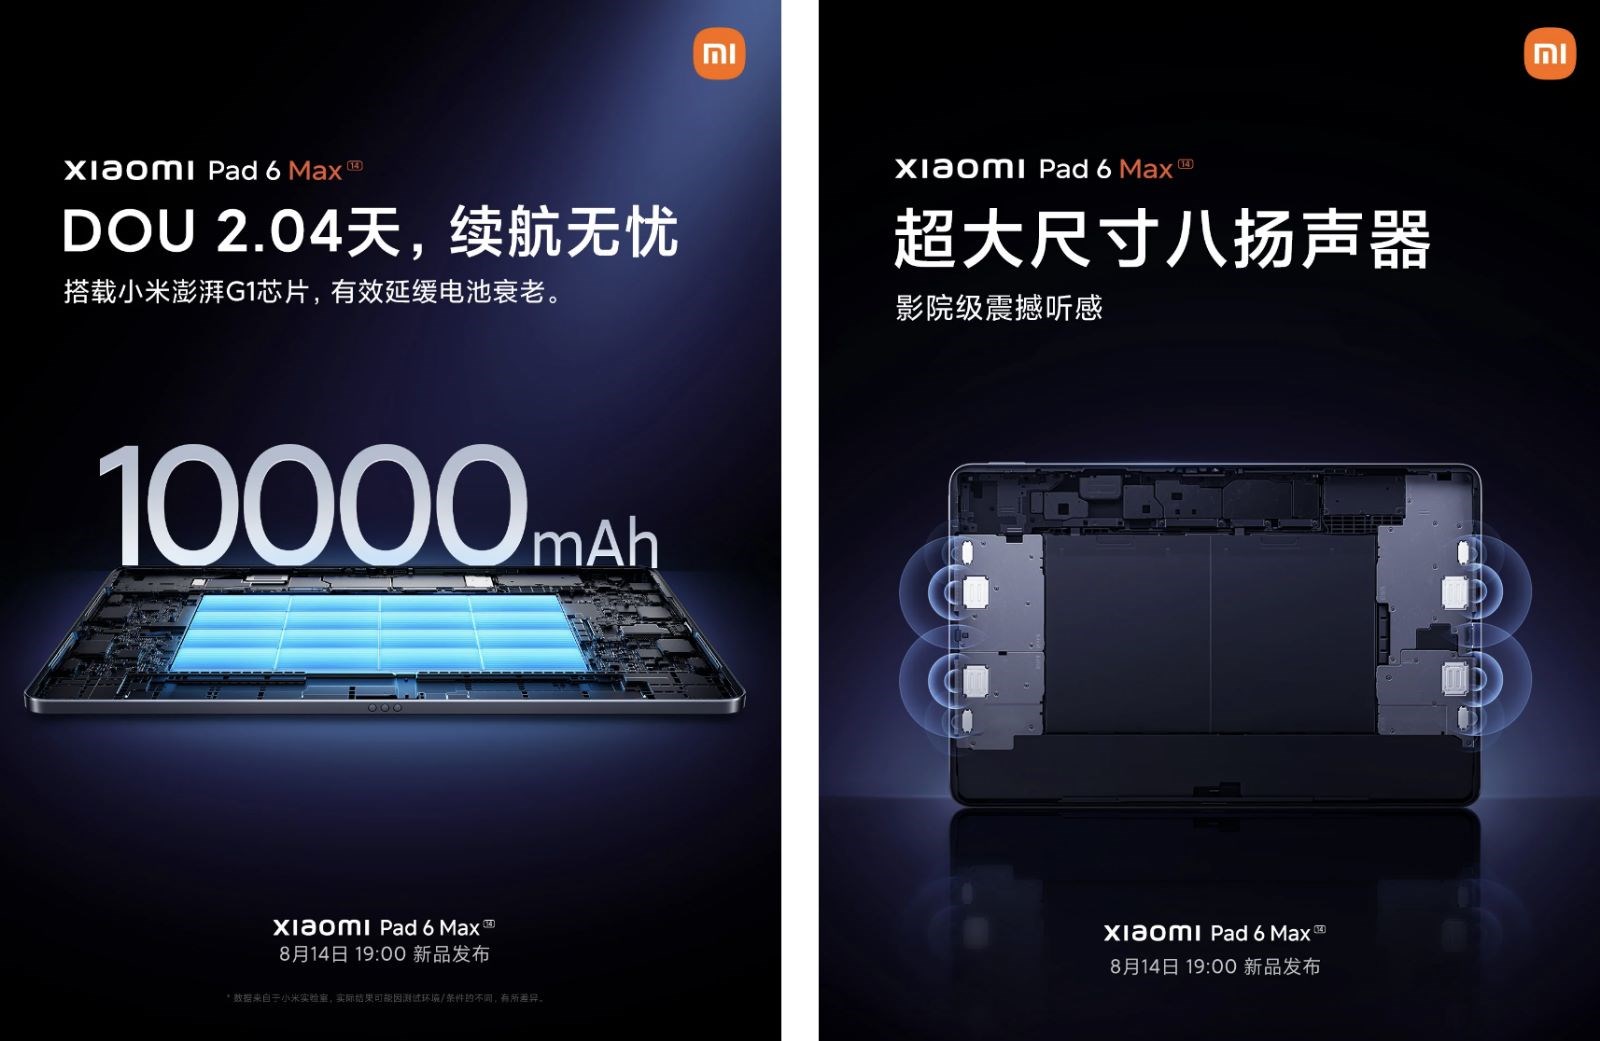 Xiaomi Pad 6 Max'in özellikleri, şirket tarafından onaylandı